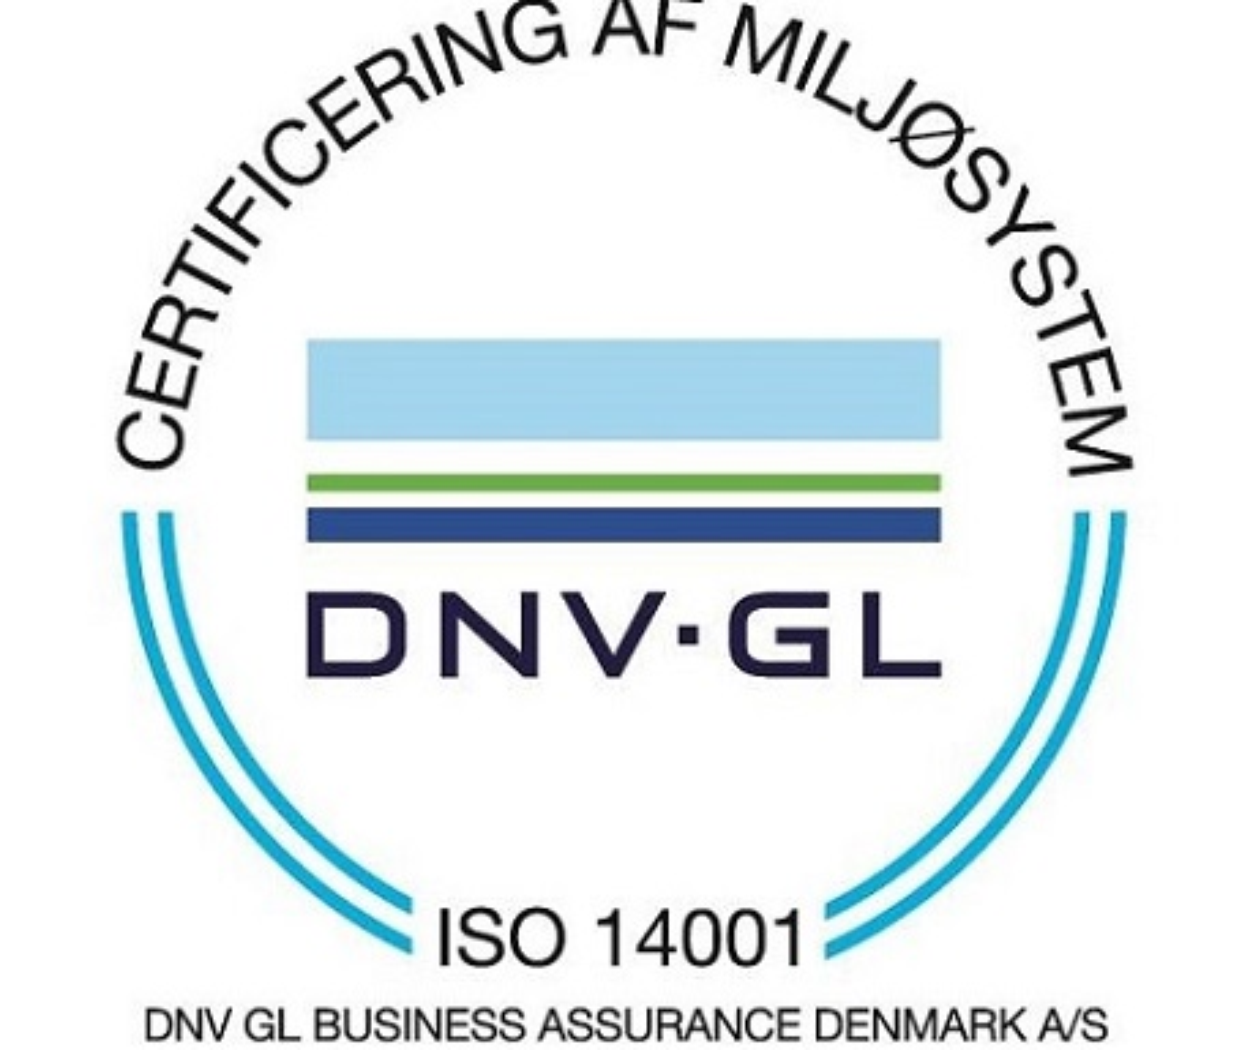 Fra Risiko virksomhed til ISO 14.001 Miljø certifikat